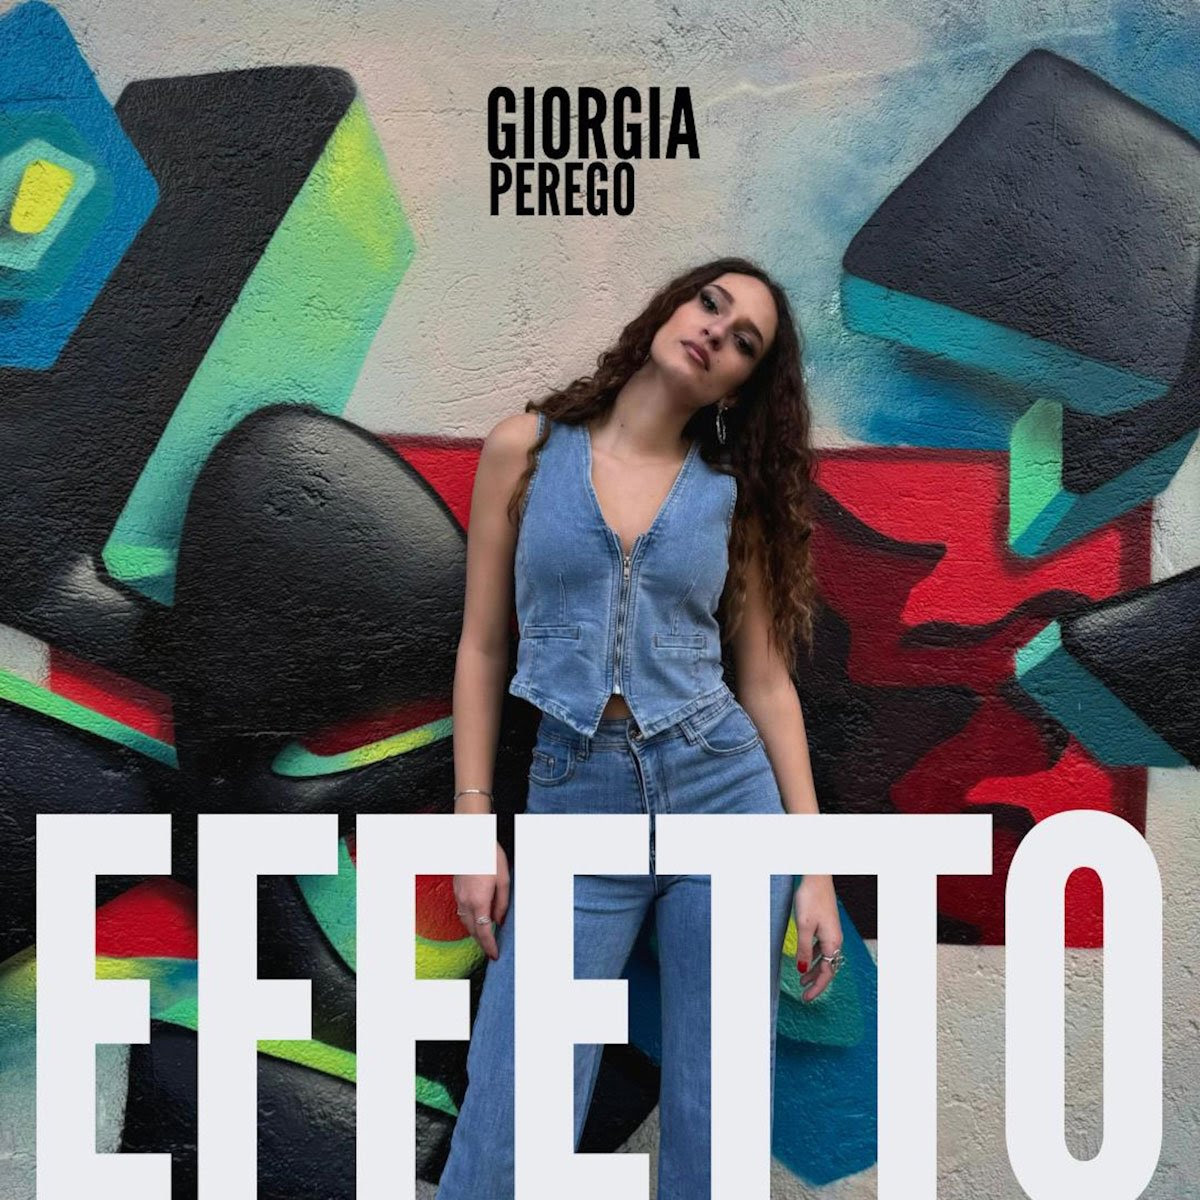 Dal 29 marzo disponibile “Effetto”, il nuovo singolo di Giorgia Perego